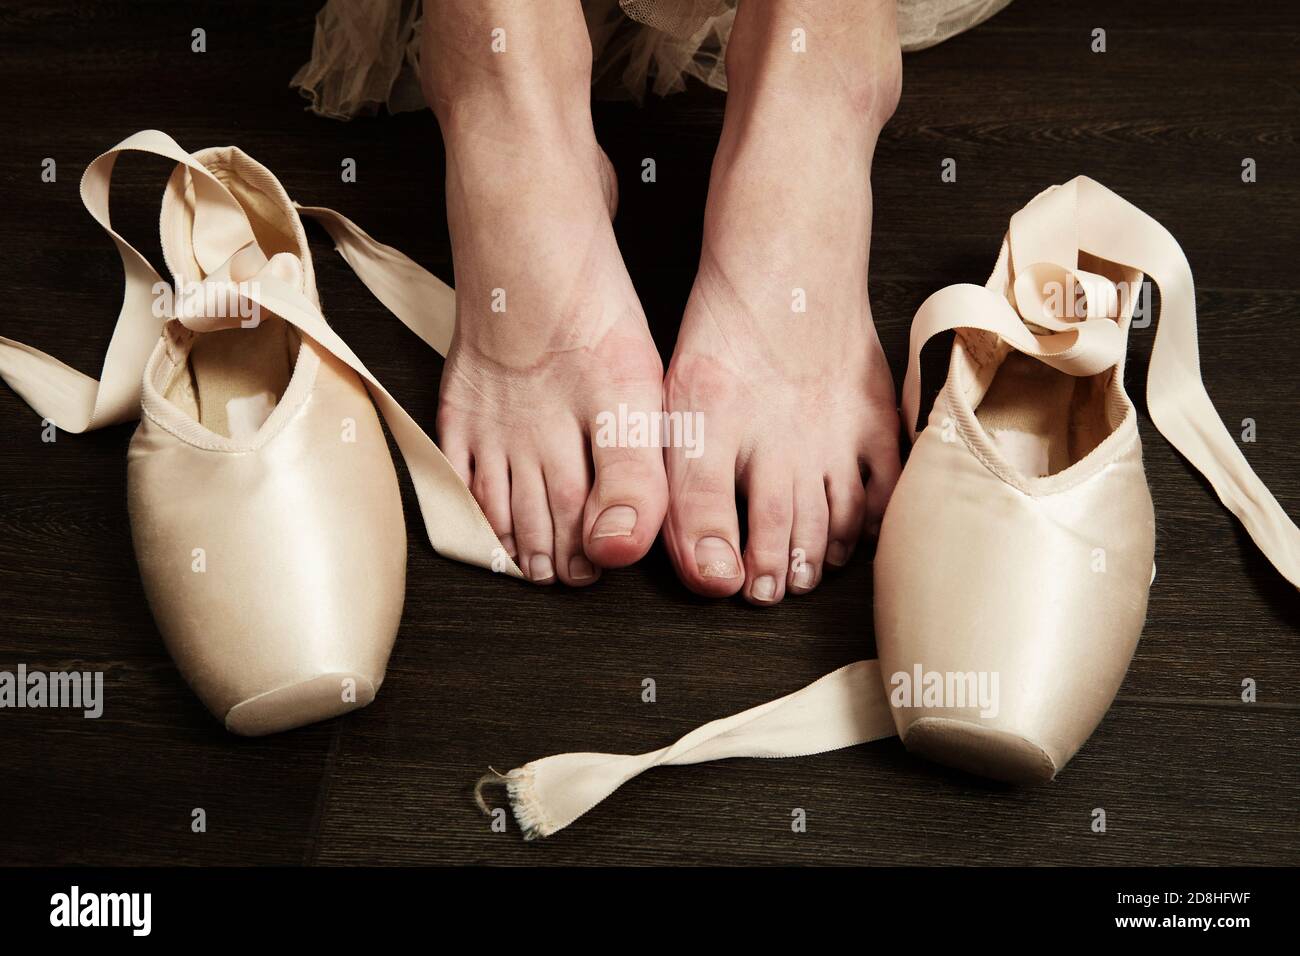 Ballerina feet immagini e fotografie stock ad alta risoluzione - Alamy